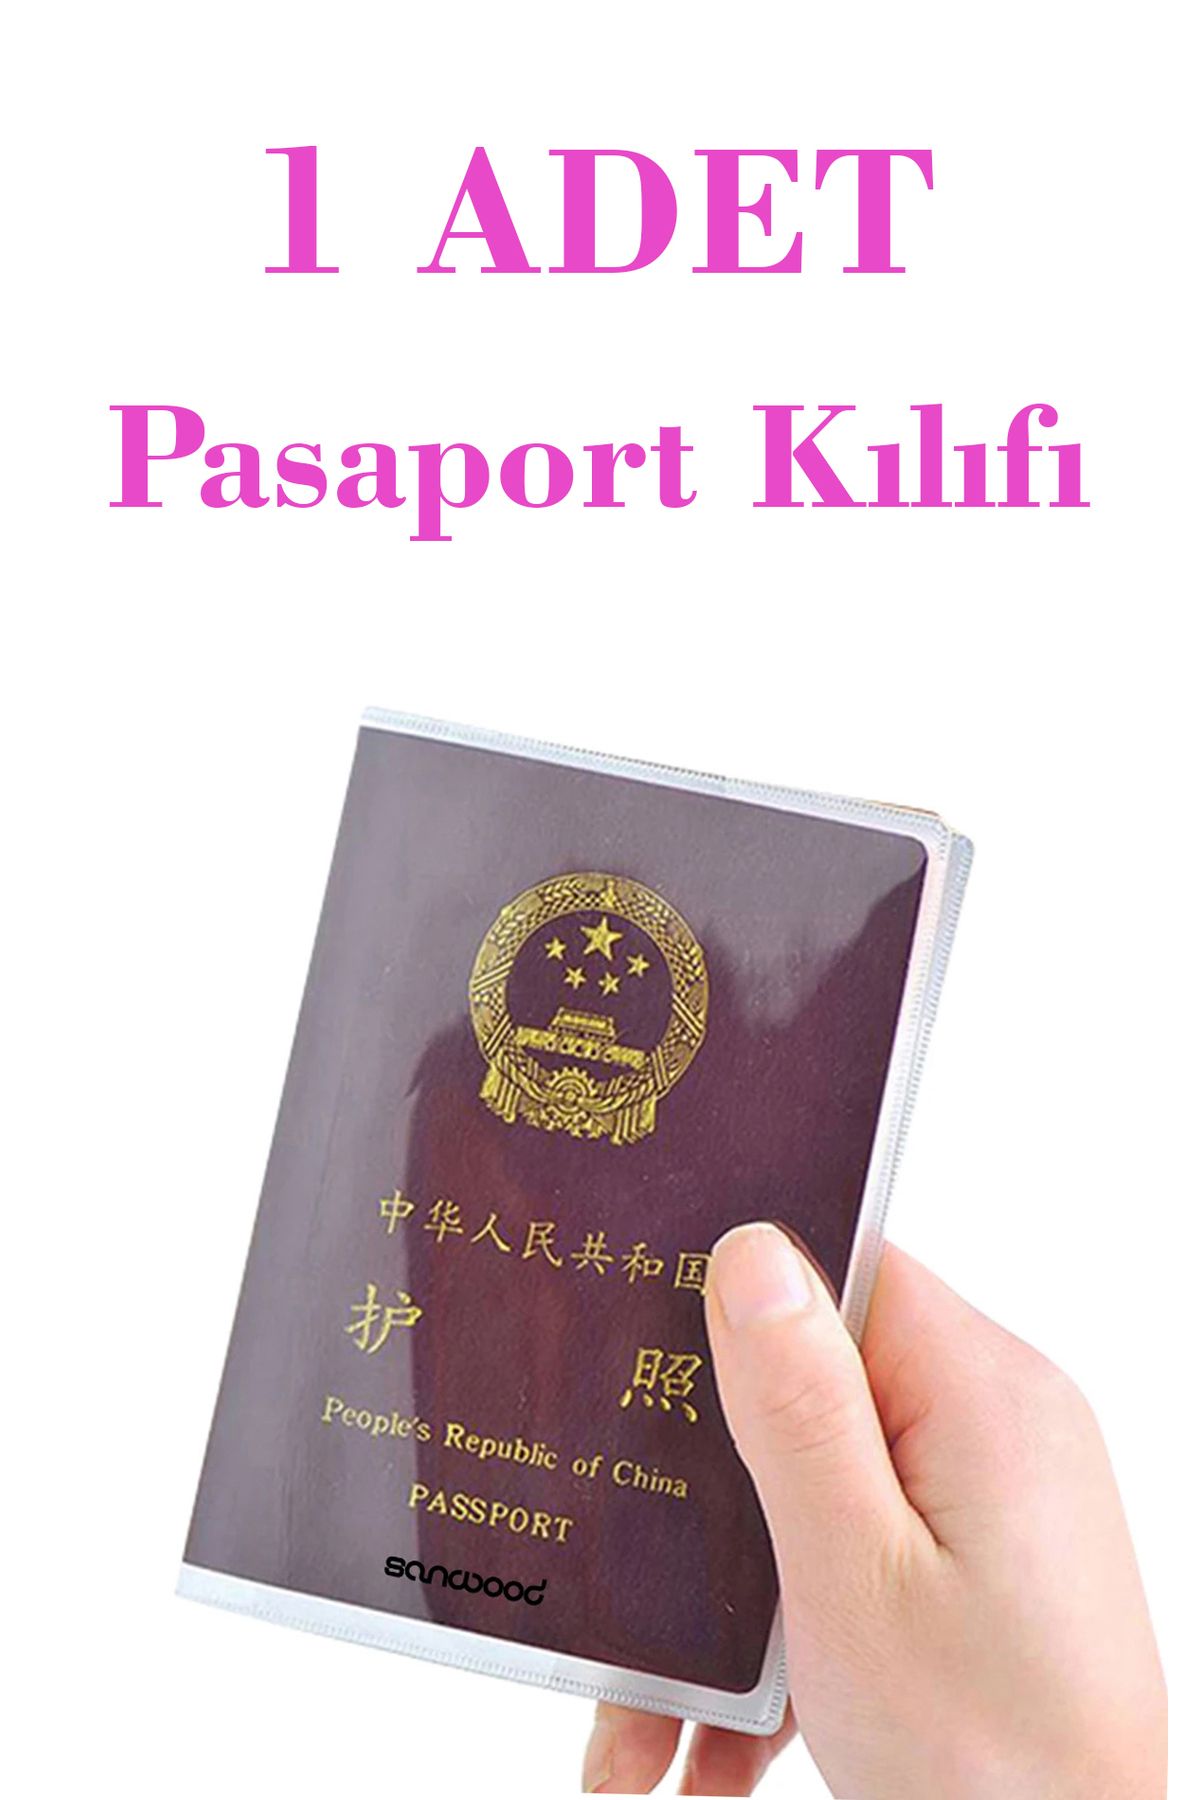 İPAX 1 Adet Şeffaf Pasaport Kılıfı Pasaport Koruma Kabı Pasaport Cüzdanı Pasaportluk Her Pasaporta Uygun